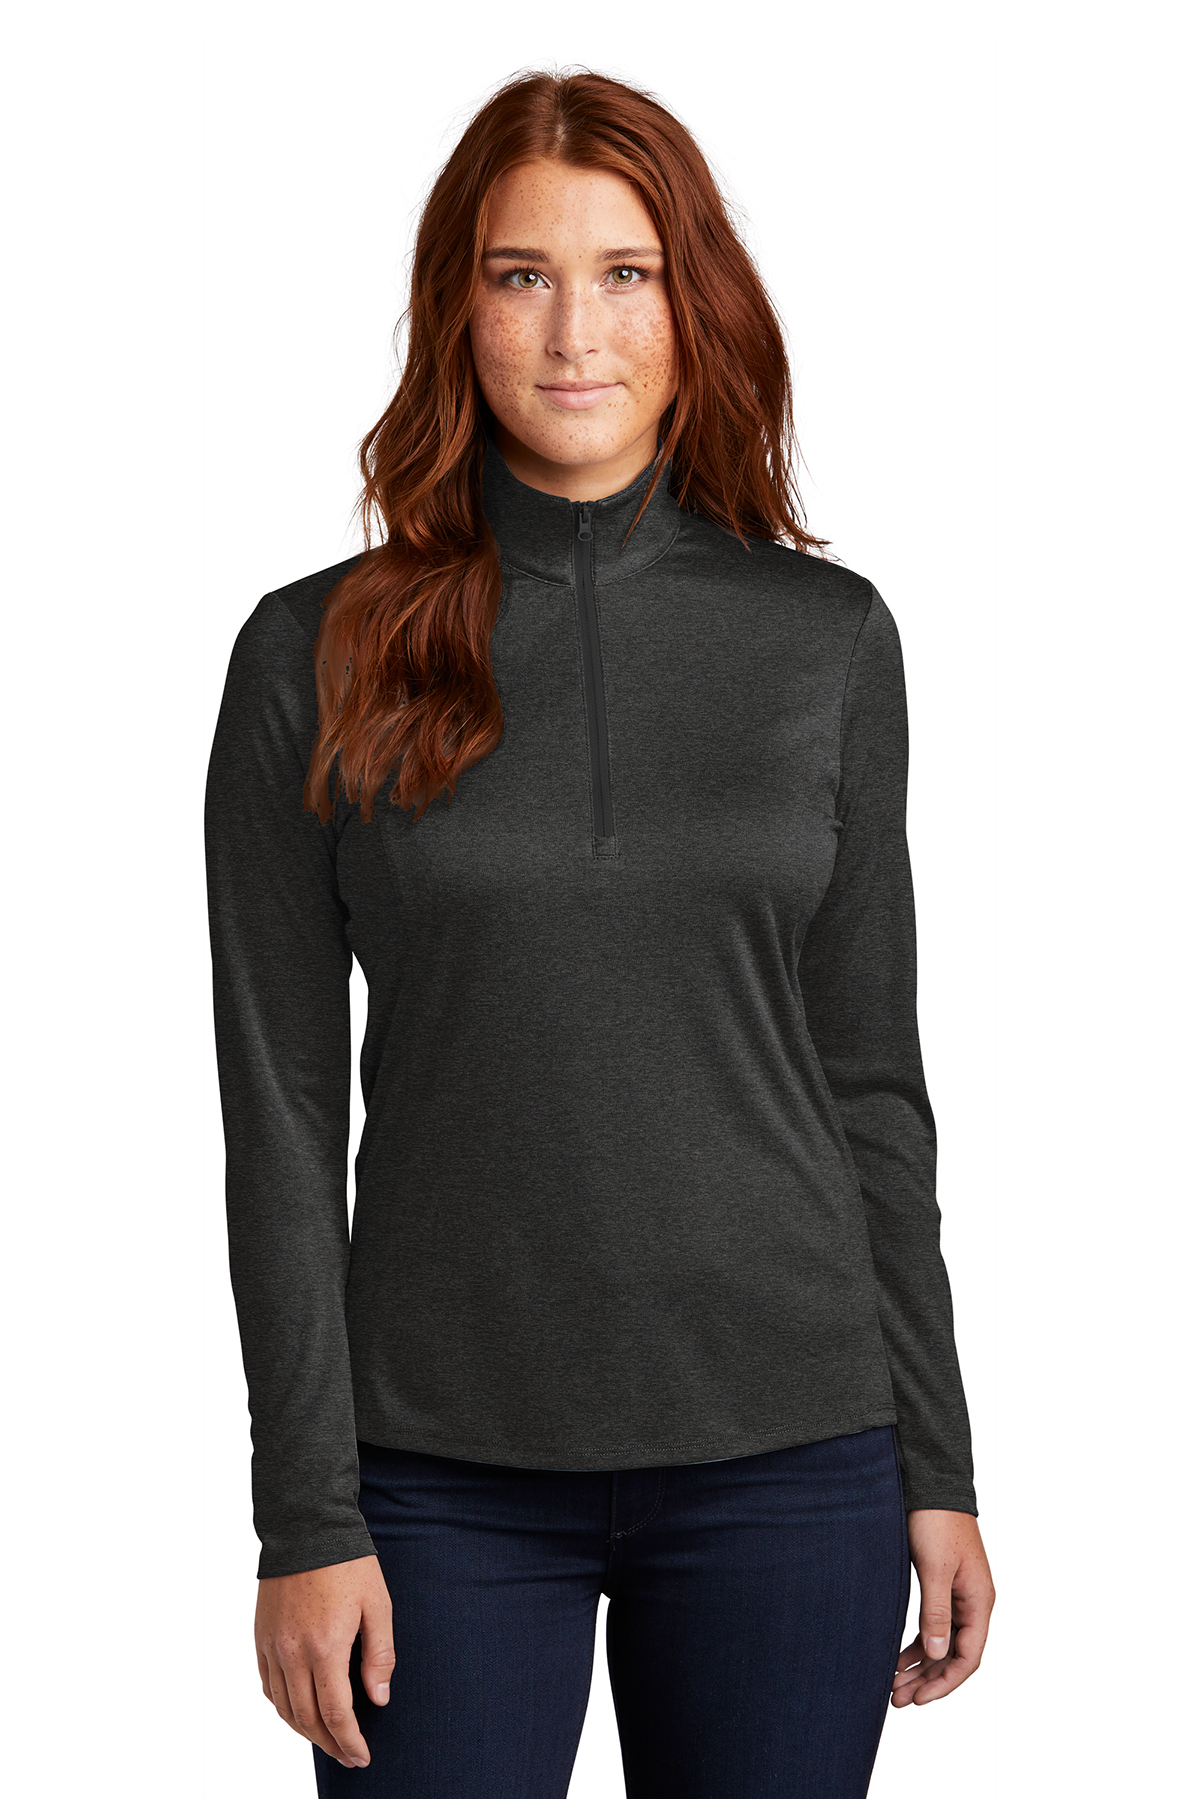 Spyder Women's Size S/P Long Sleeve Gray Soft Fleece Pullover Shirt Top  RN#63619